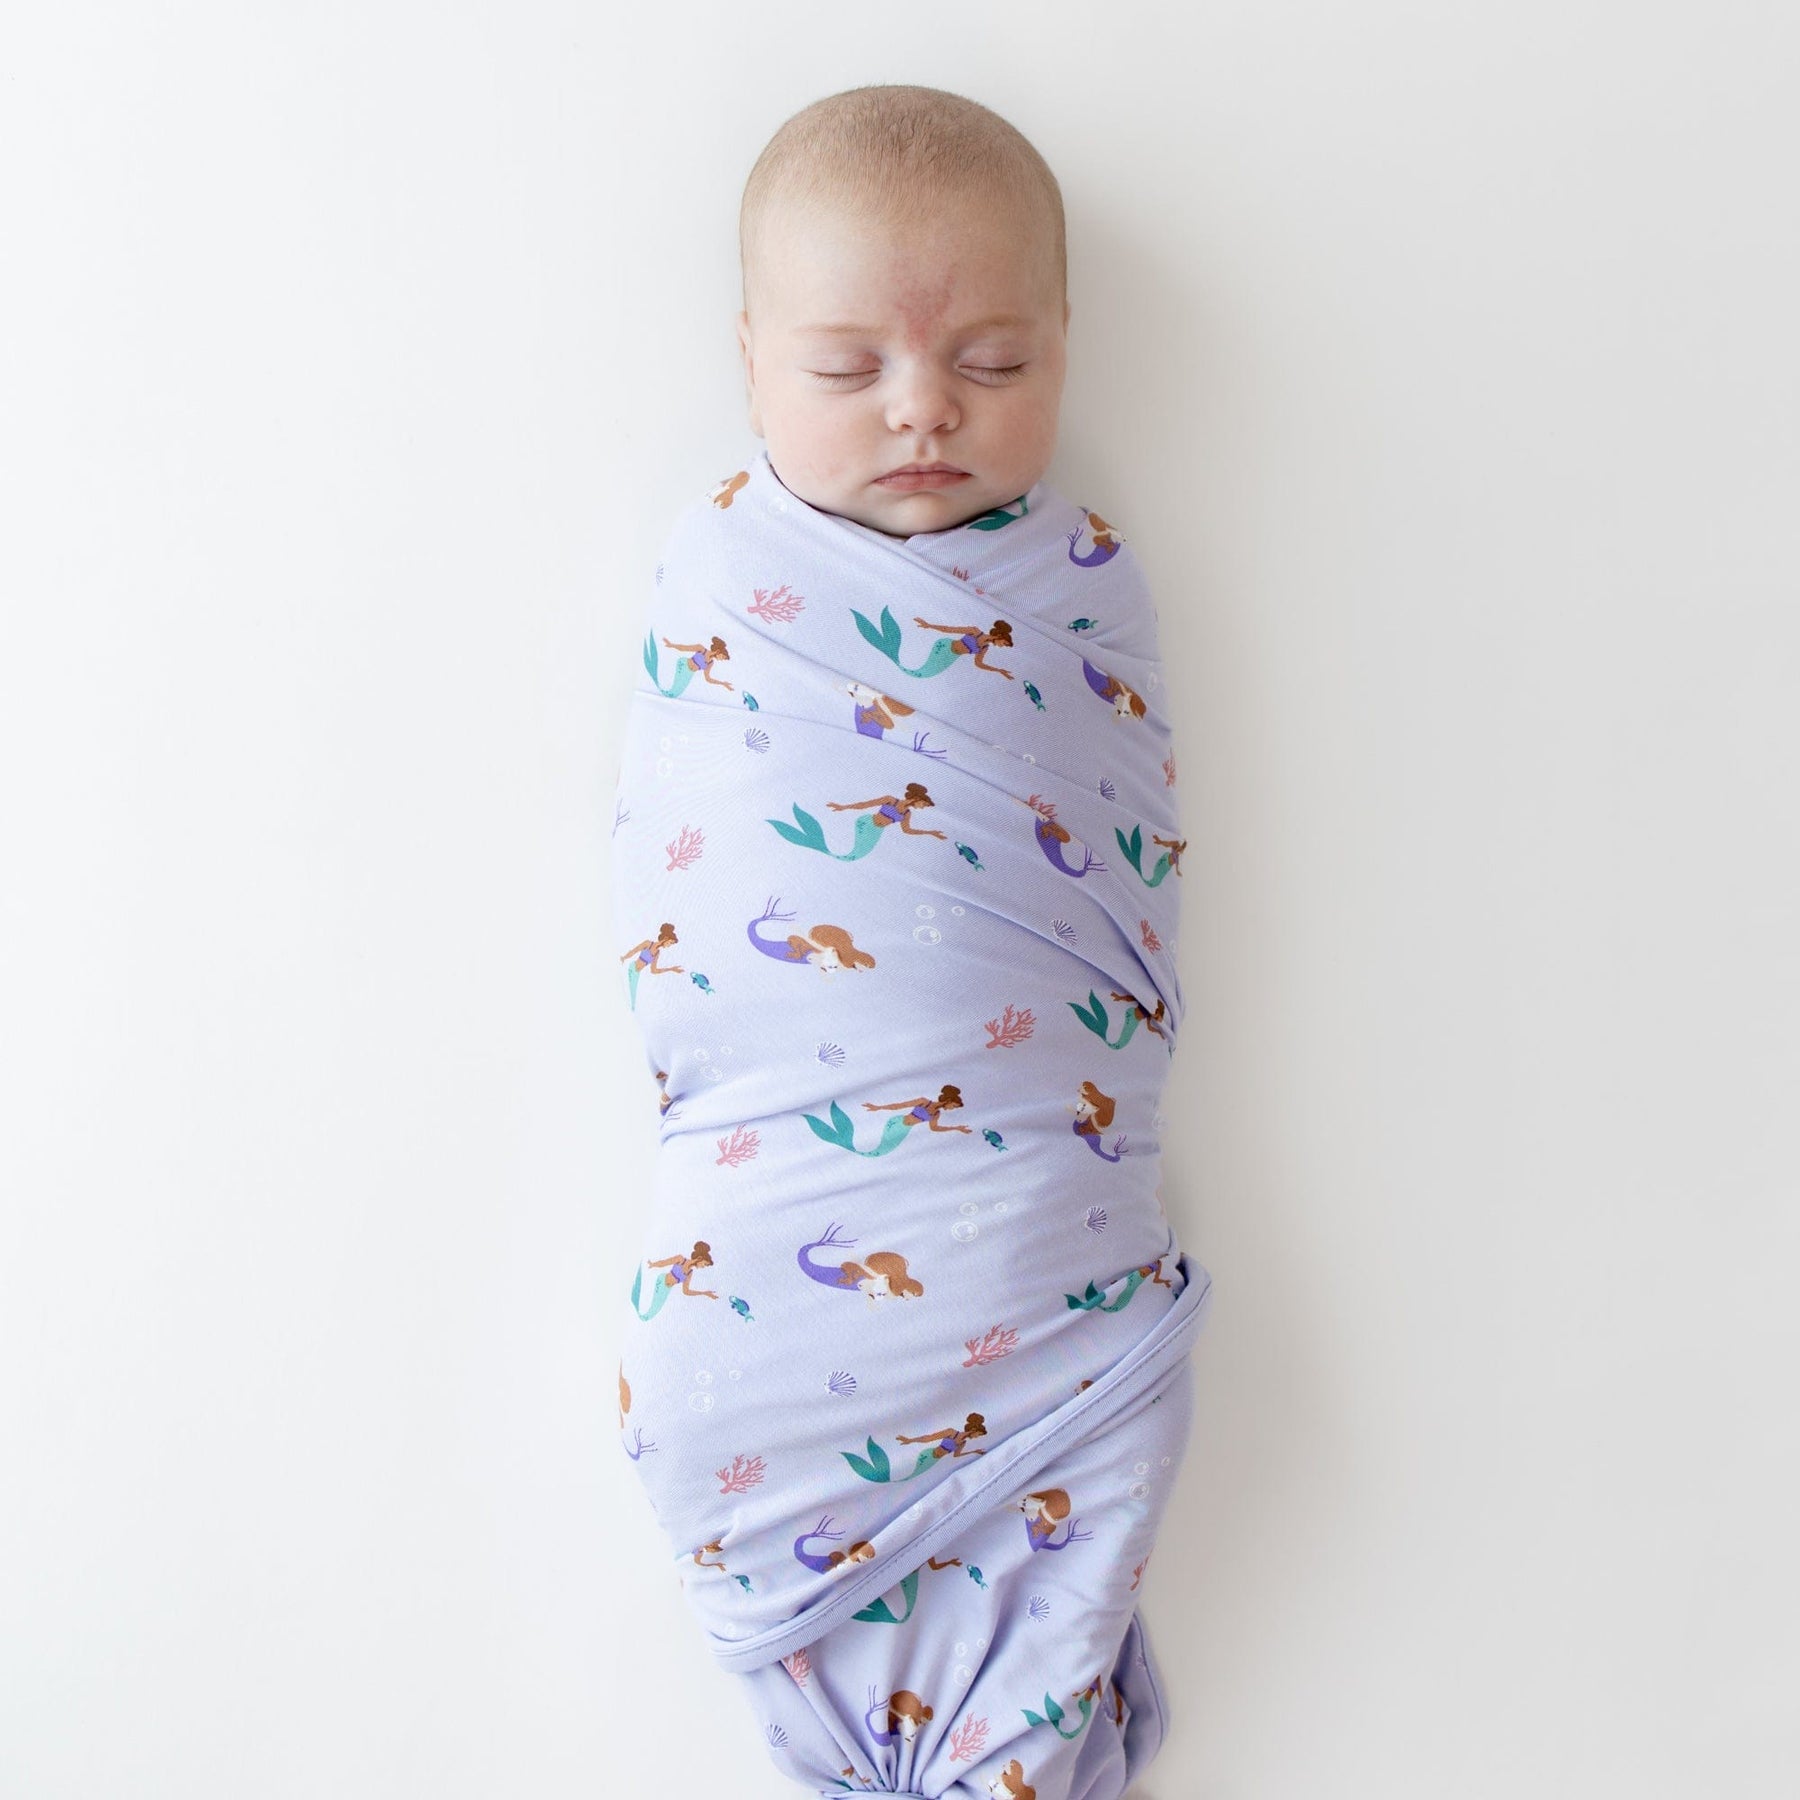 Kyte Baby Swaddling Blanket Mermaid / Infant Swaddle Blanket in Mermaid